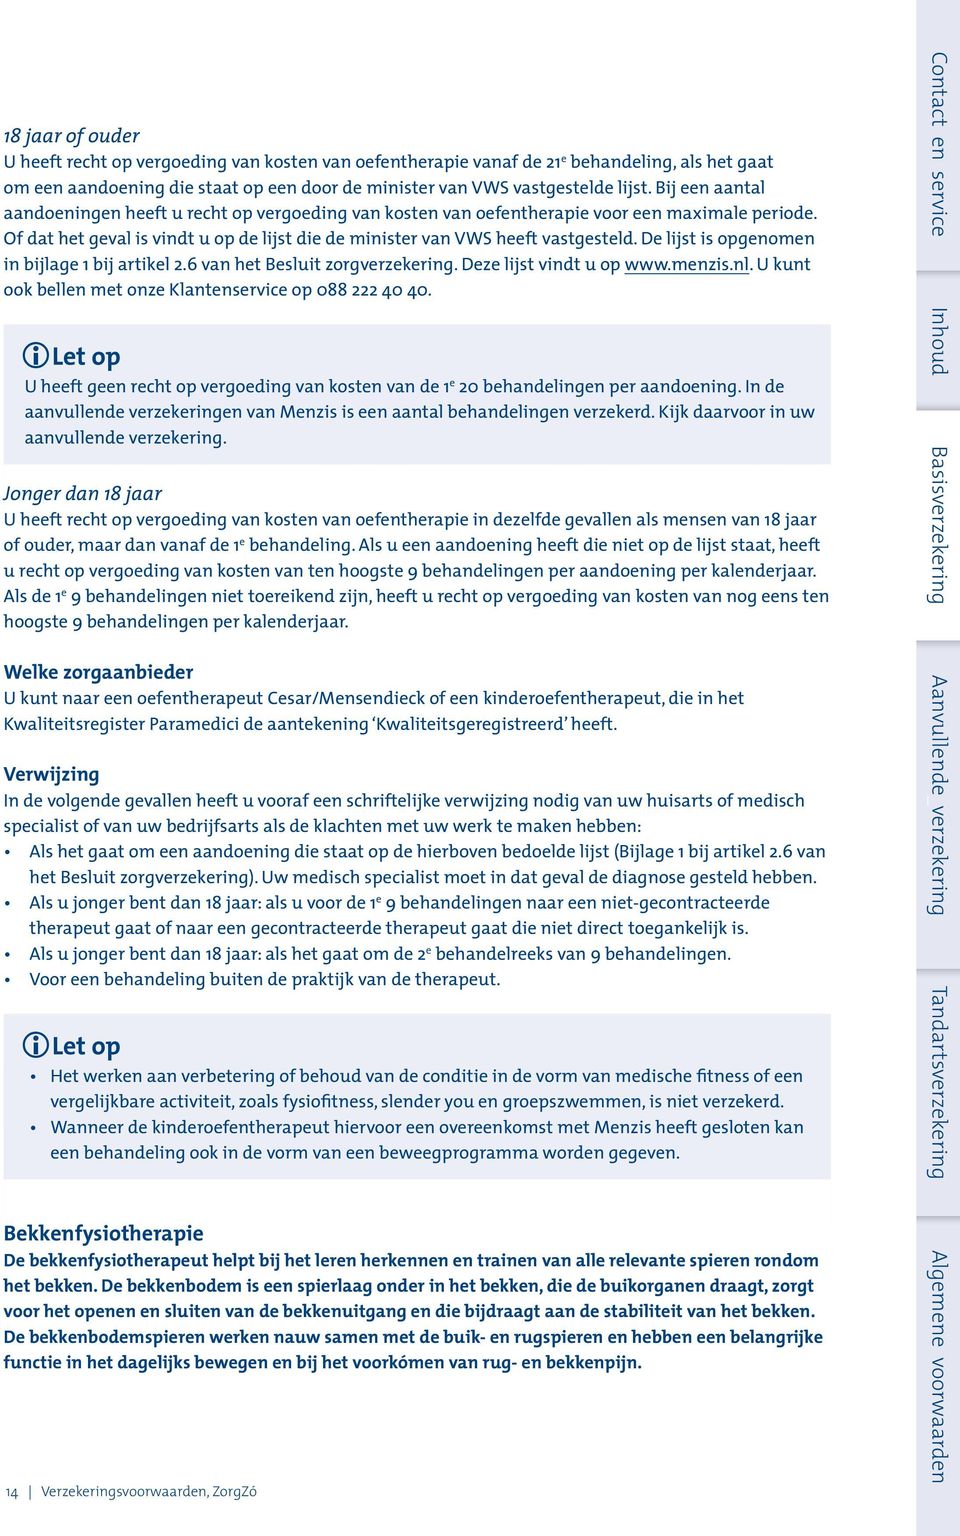 De lijst is opgenomen in bijlage 1 bij artikel 2.6 van het Besluit zorgverzekering. Deze lijst vindt u op www.menzis.nl. U kunt ook bellen met onze Klantenservice op 088 222 40 40.